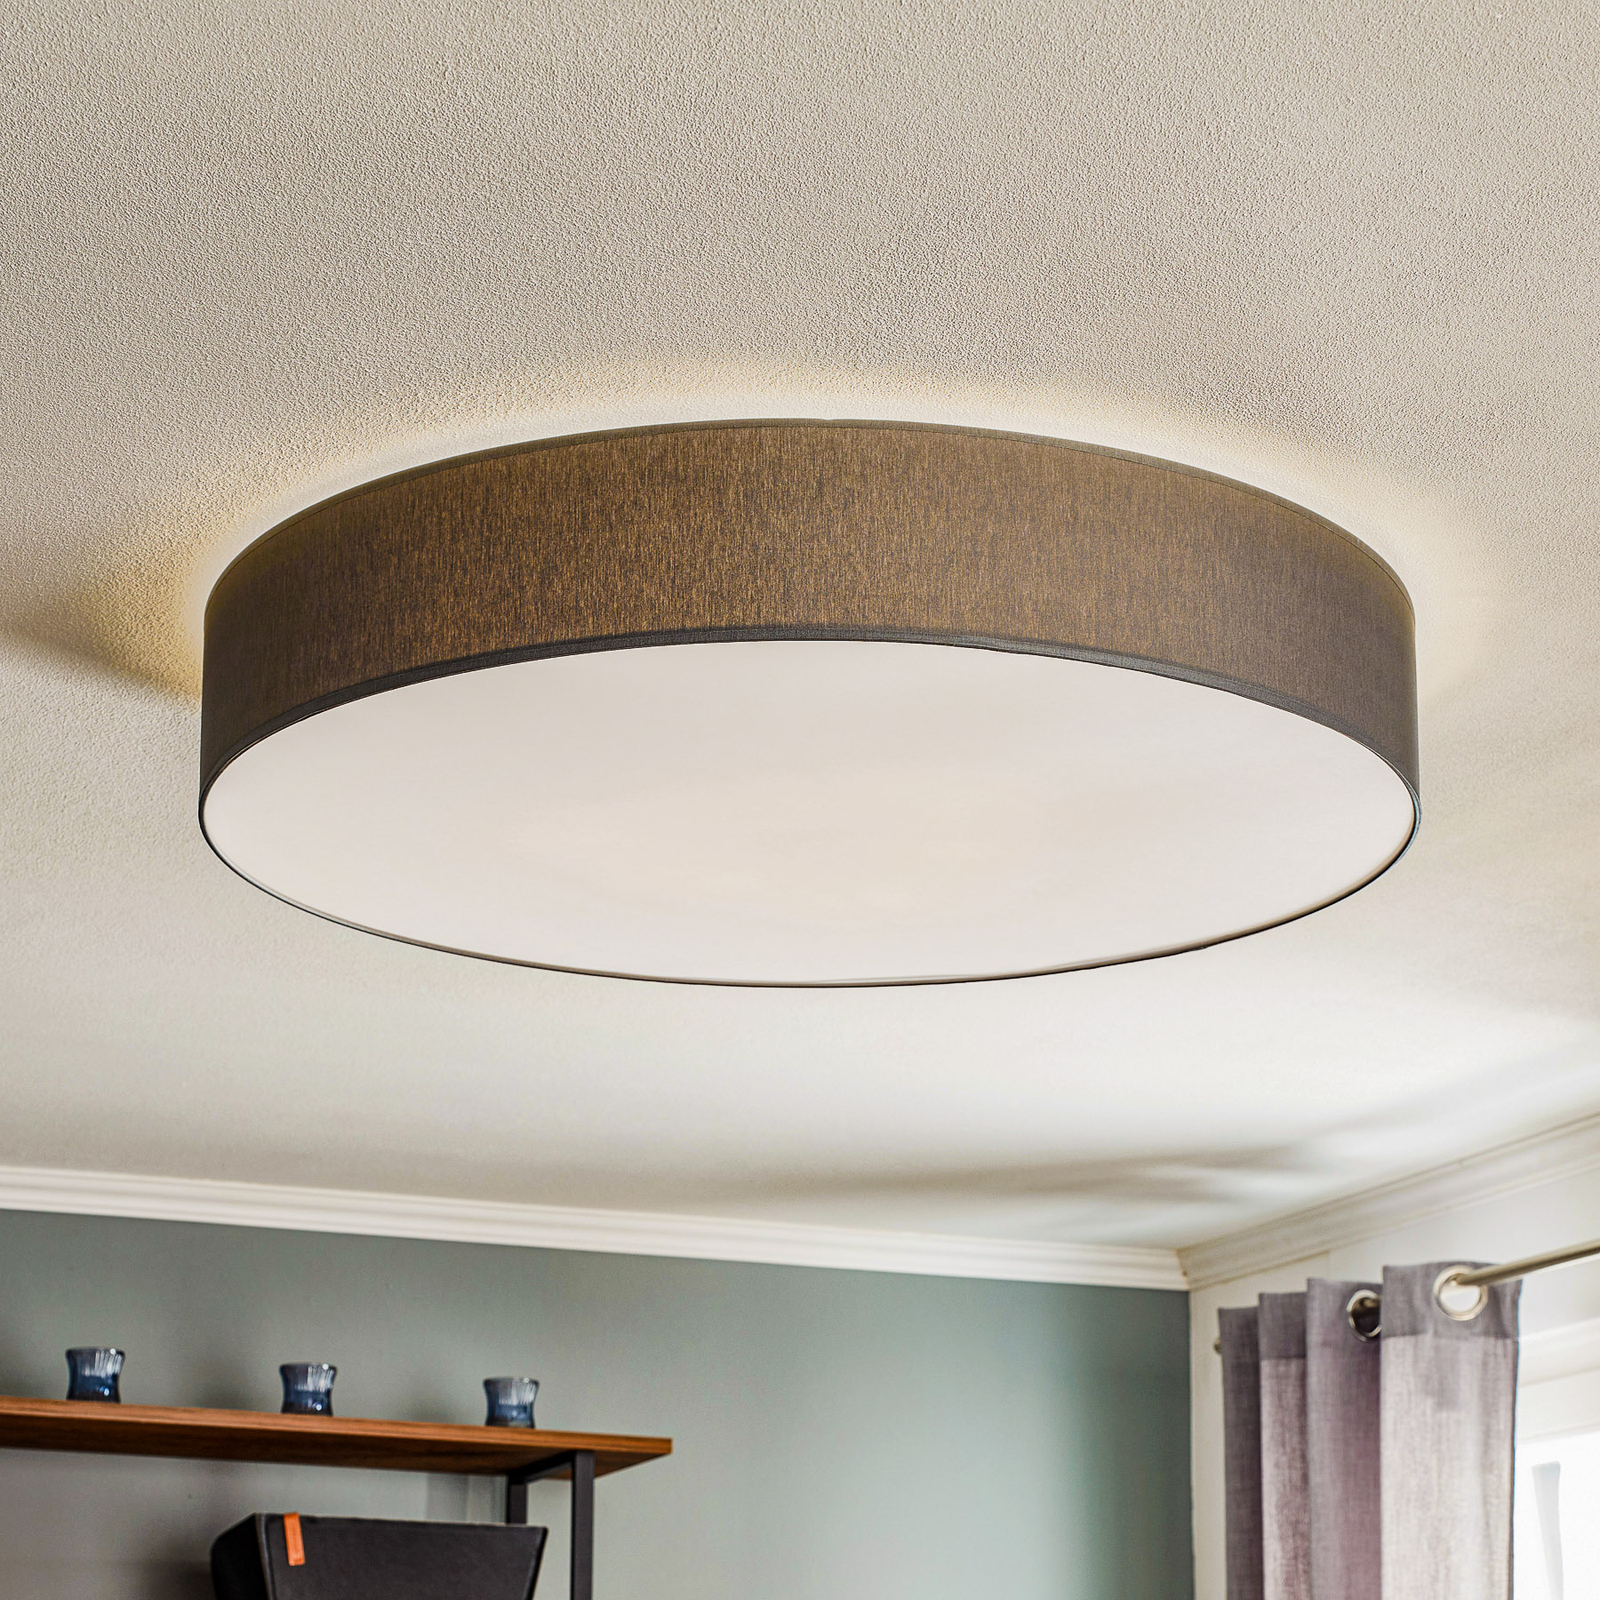 Rondo ceiling light, grey Ø 80cm